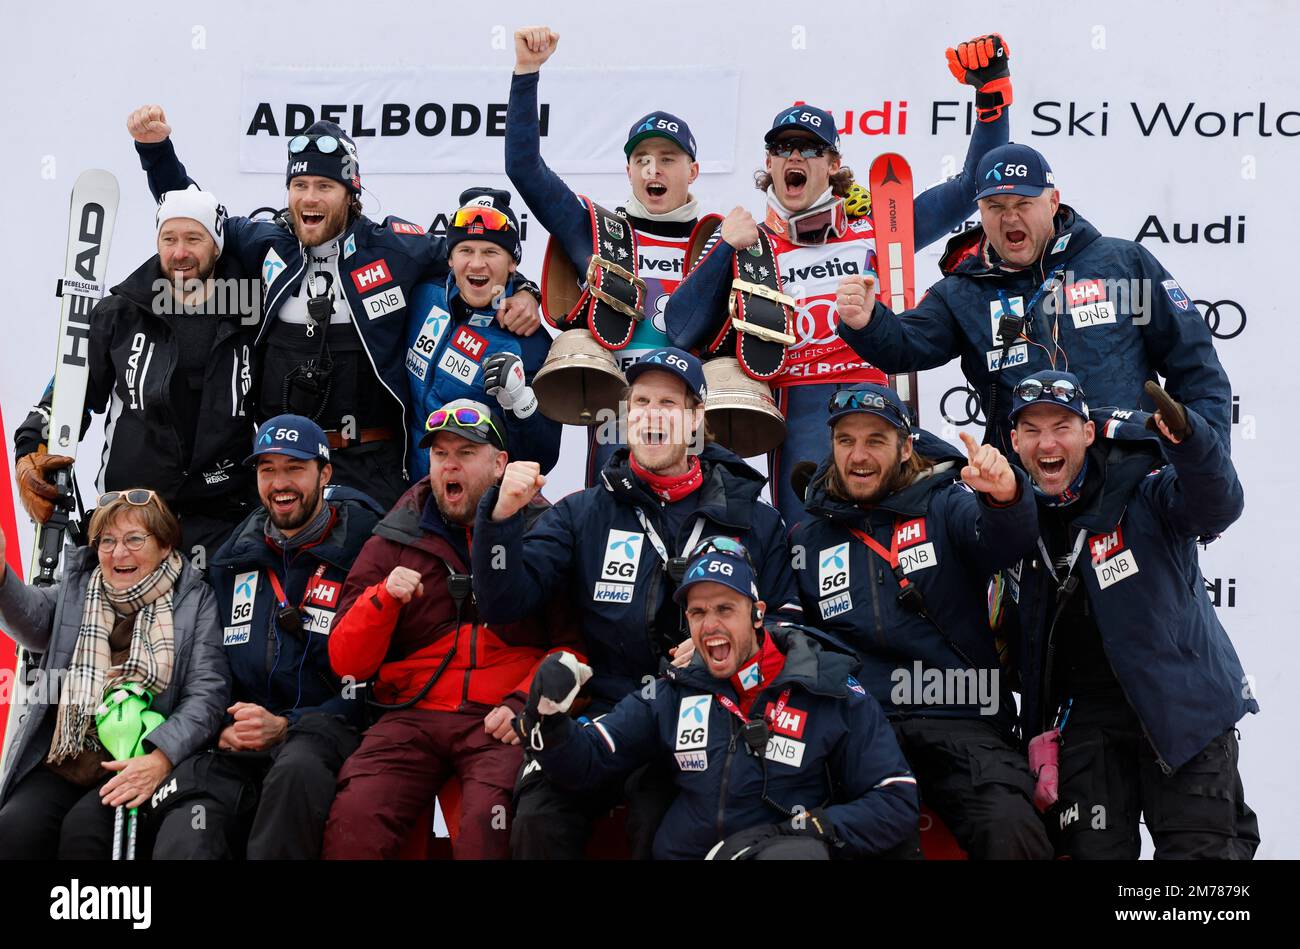 Ski alpin - FIS coupe du monde de ski alpin - Slalom masculin - Adelboden, Suisse - Lucas Braathen, de 8 janvier 2023 Norvège, célèbre avec le trophée après avoir remporté le trophée aux côtés de ses coéquipiers REUTERS/Stefan Wermuth IMAGES TPX DU JOUR Banque D'Images